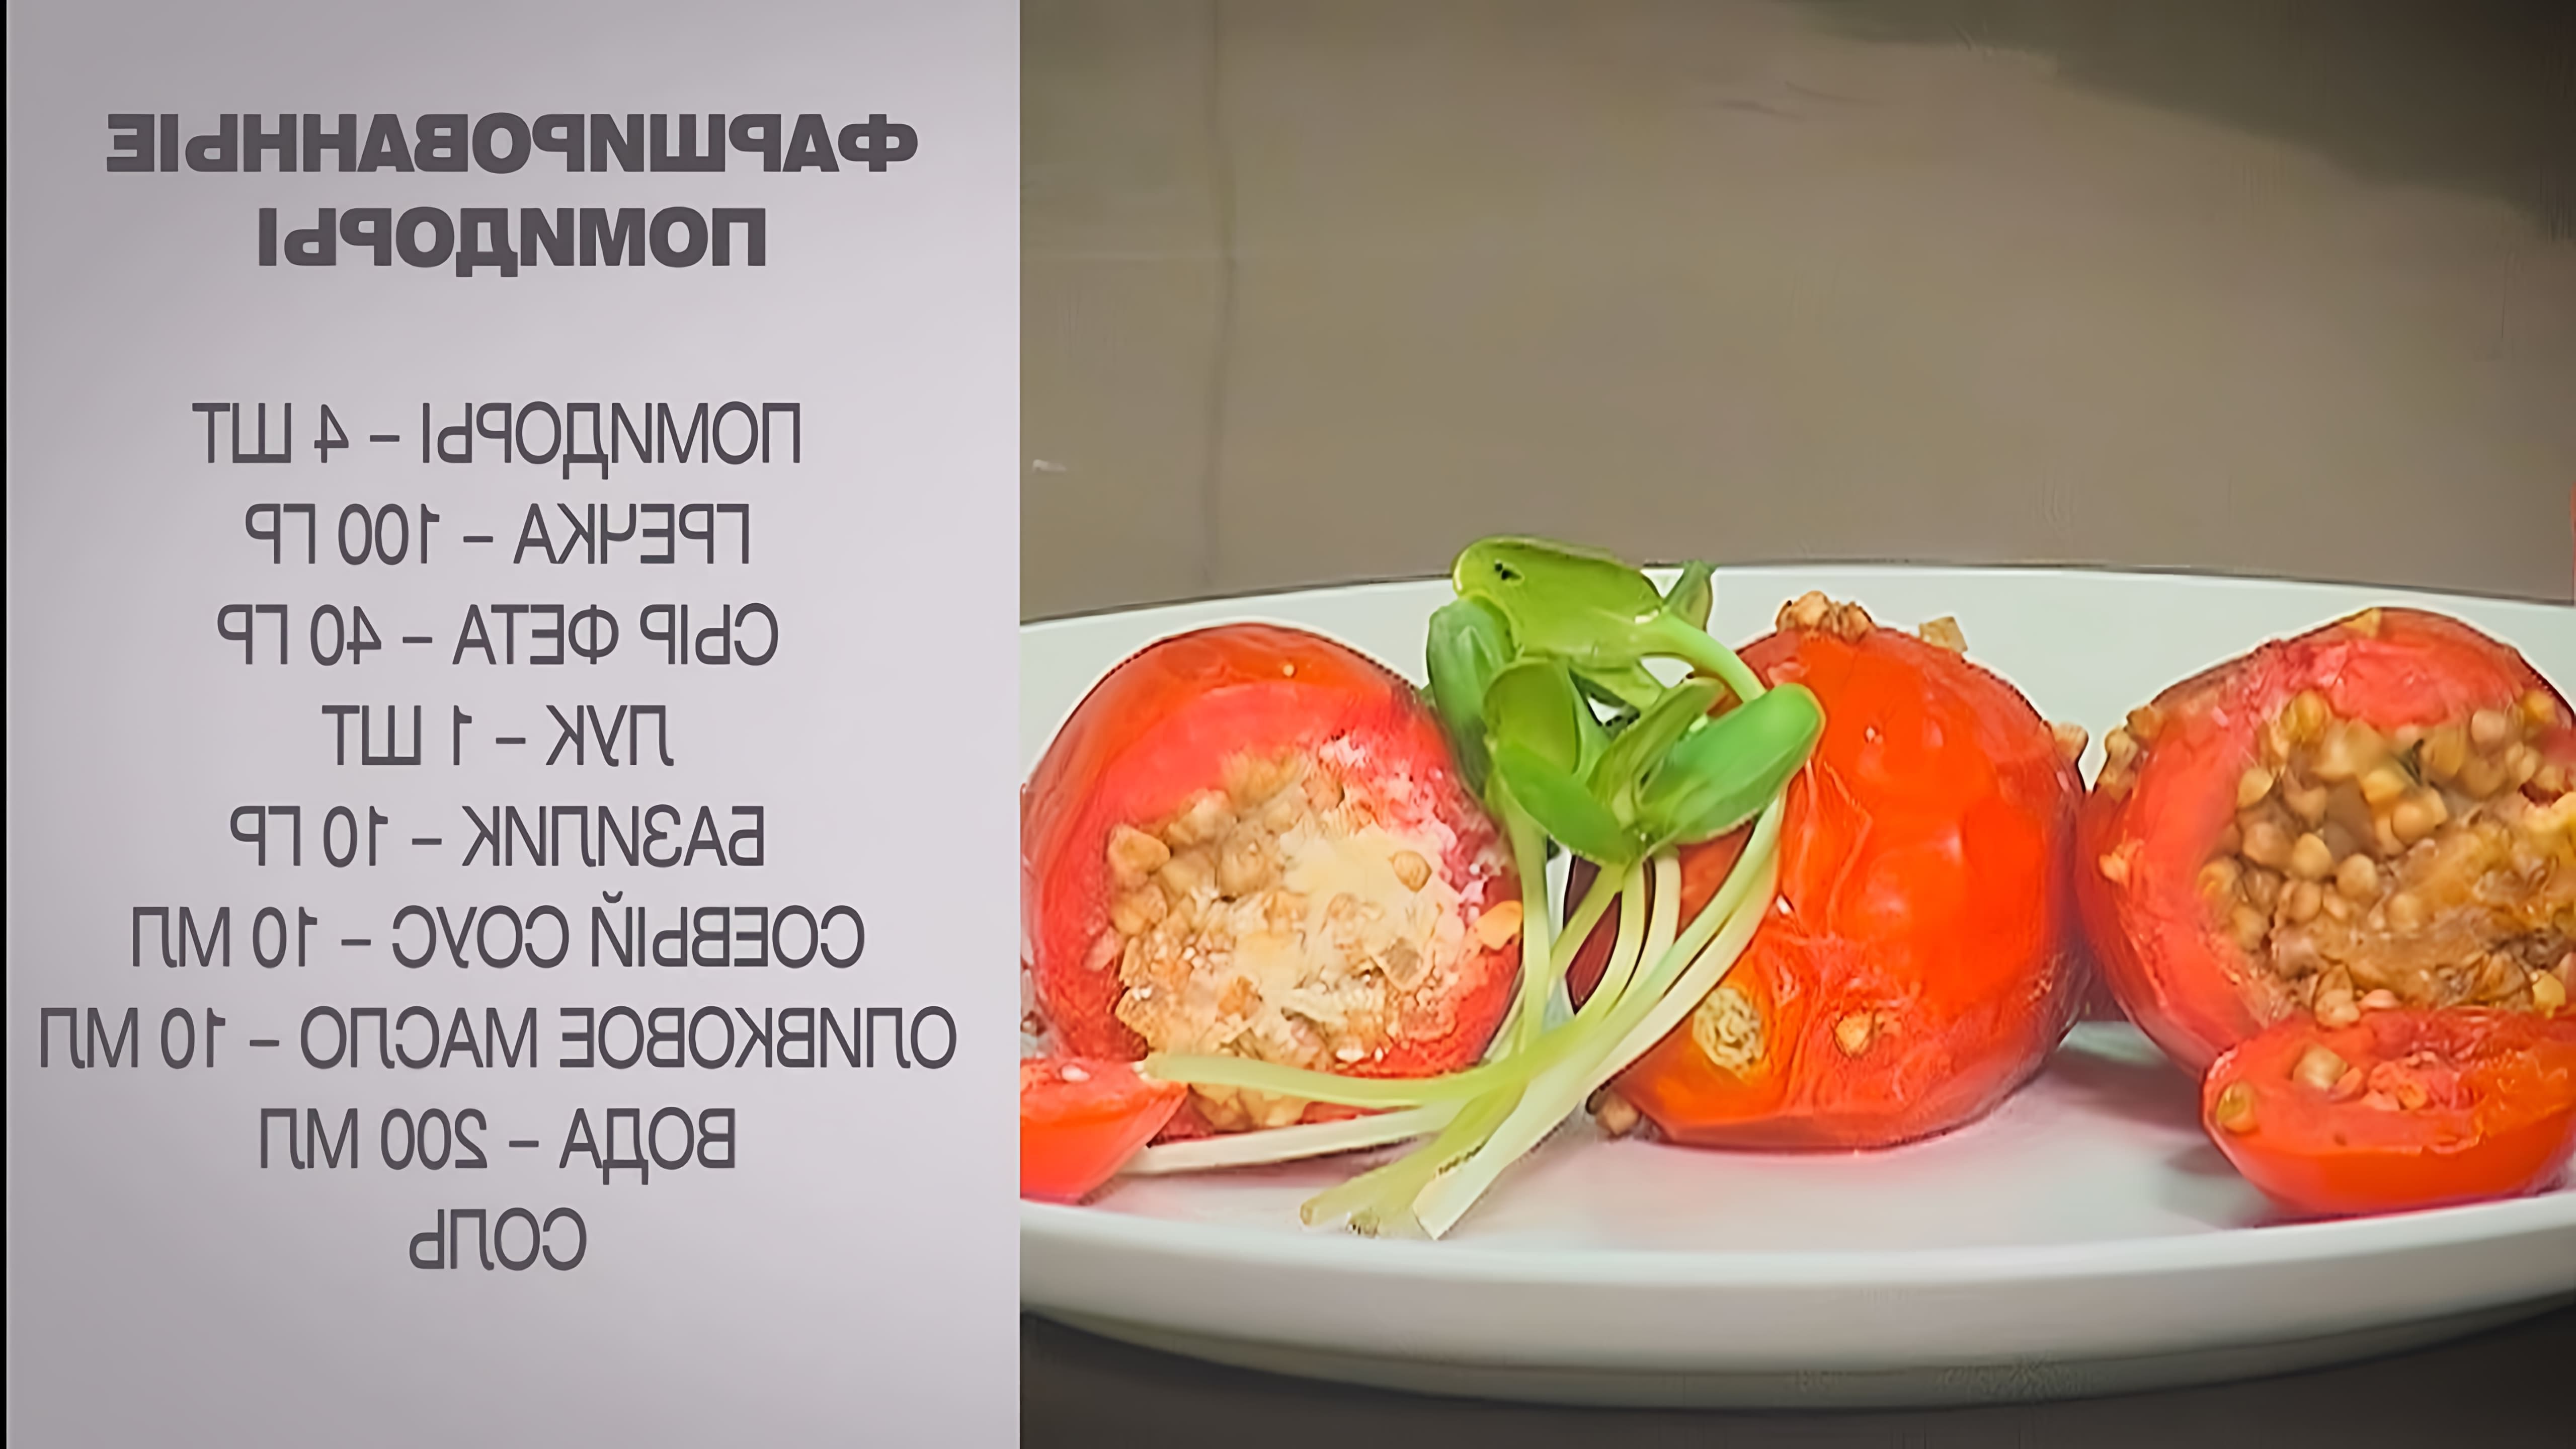 Фаршированные помидоры - это вкусное и оригинальное блюдо, которое можно приготовить в домашних условиях